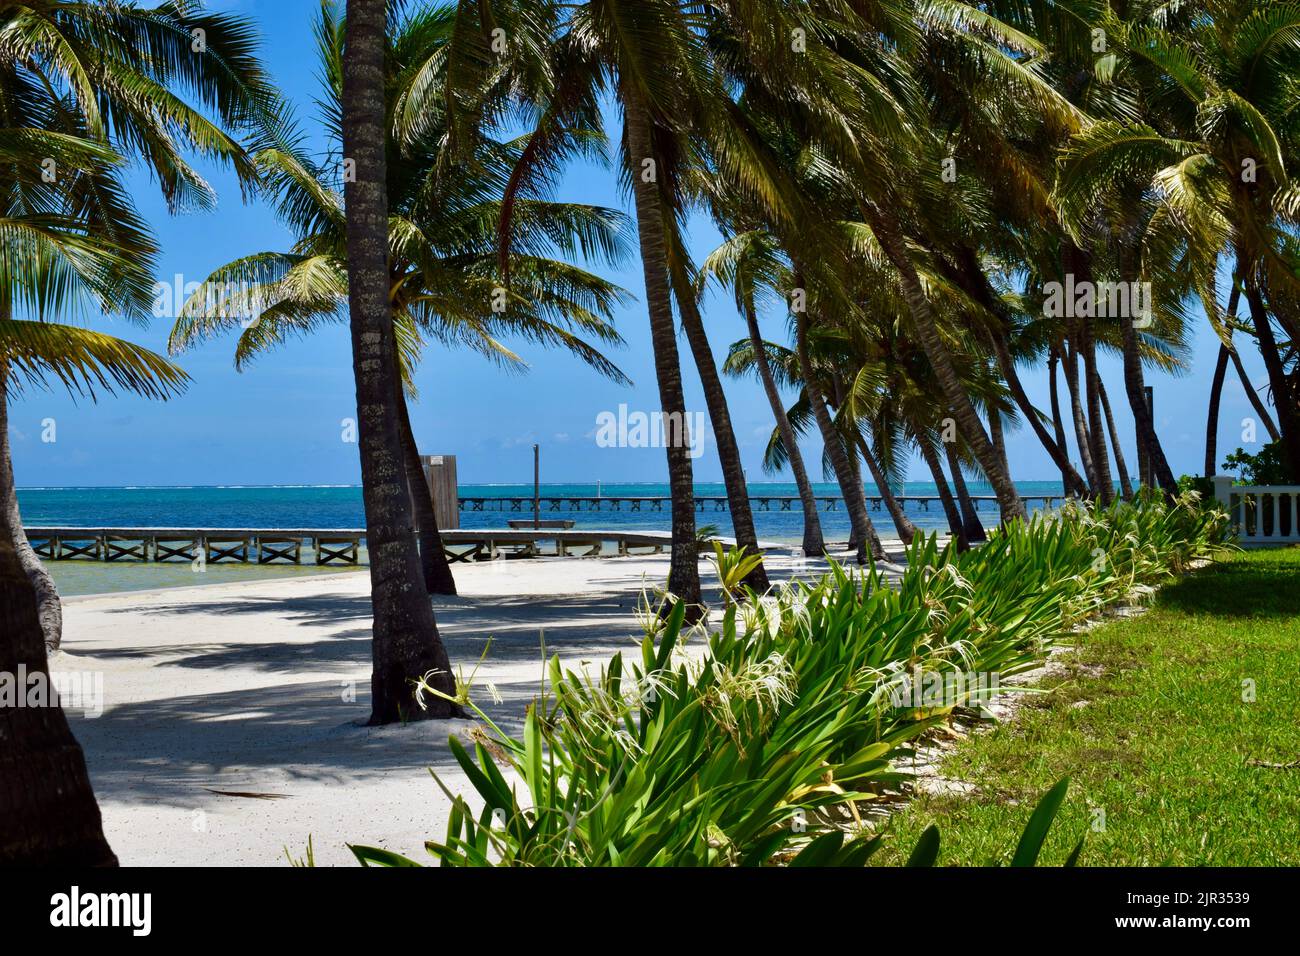 Una scena tropicale su Ambergris Caye, San Pedro, Belize, con un molo, palme, sabbia bianca, e piante tropicali. Foto Stock